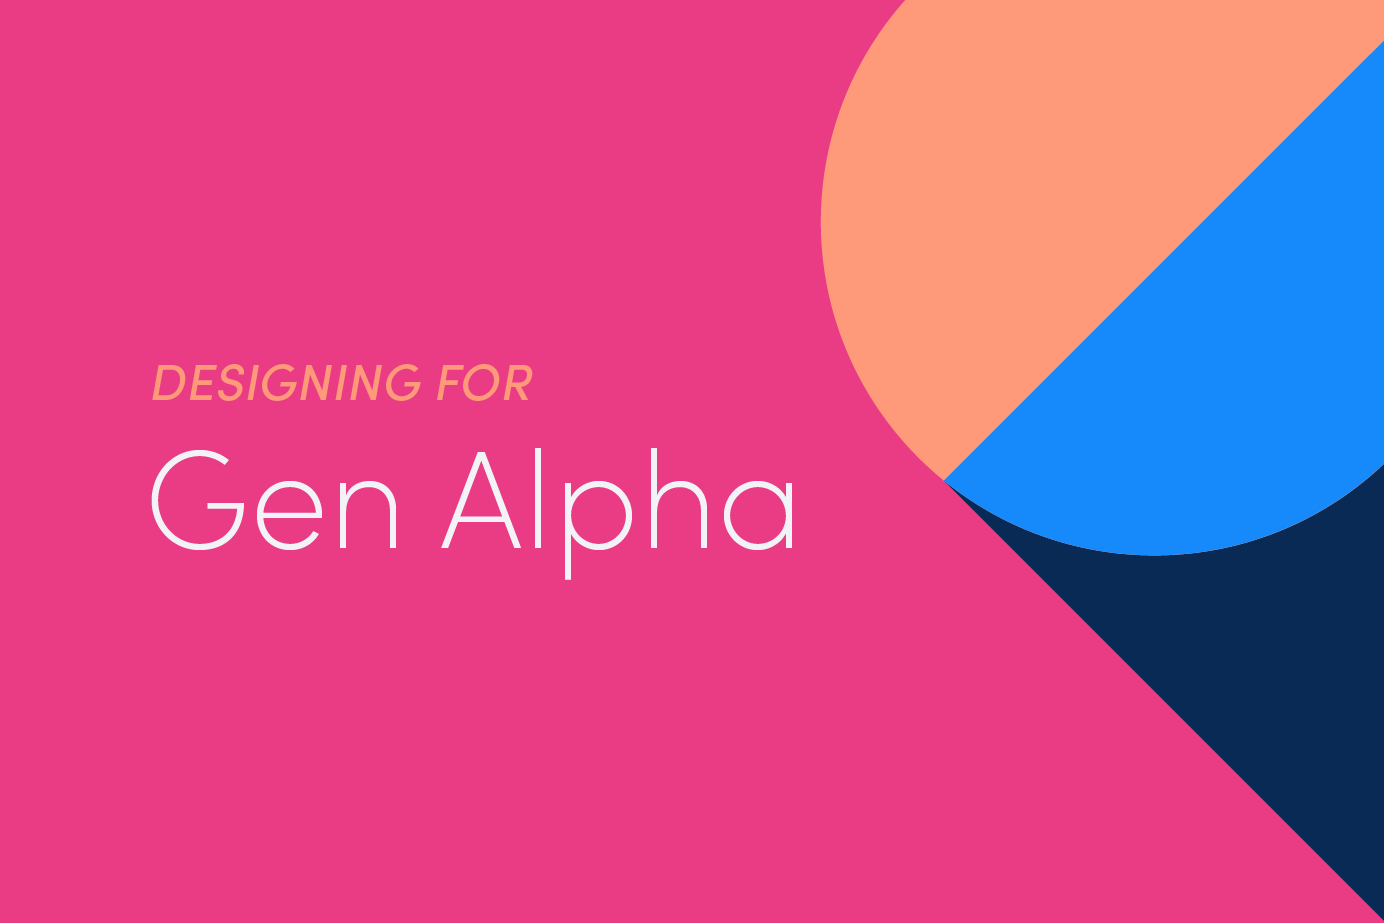 Designing Apps for Gen Alpha Image